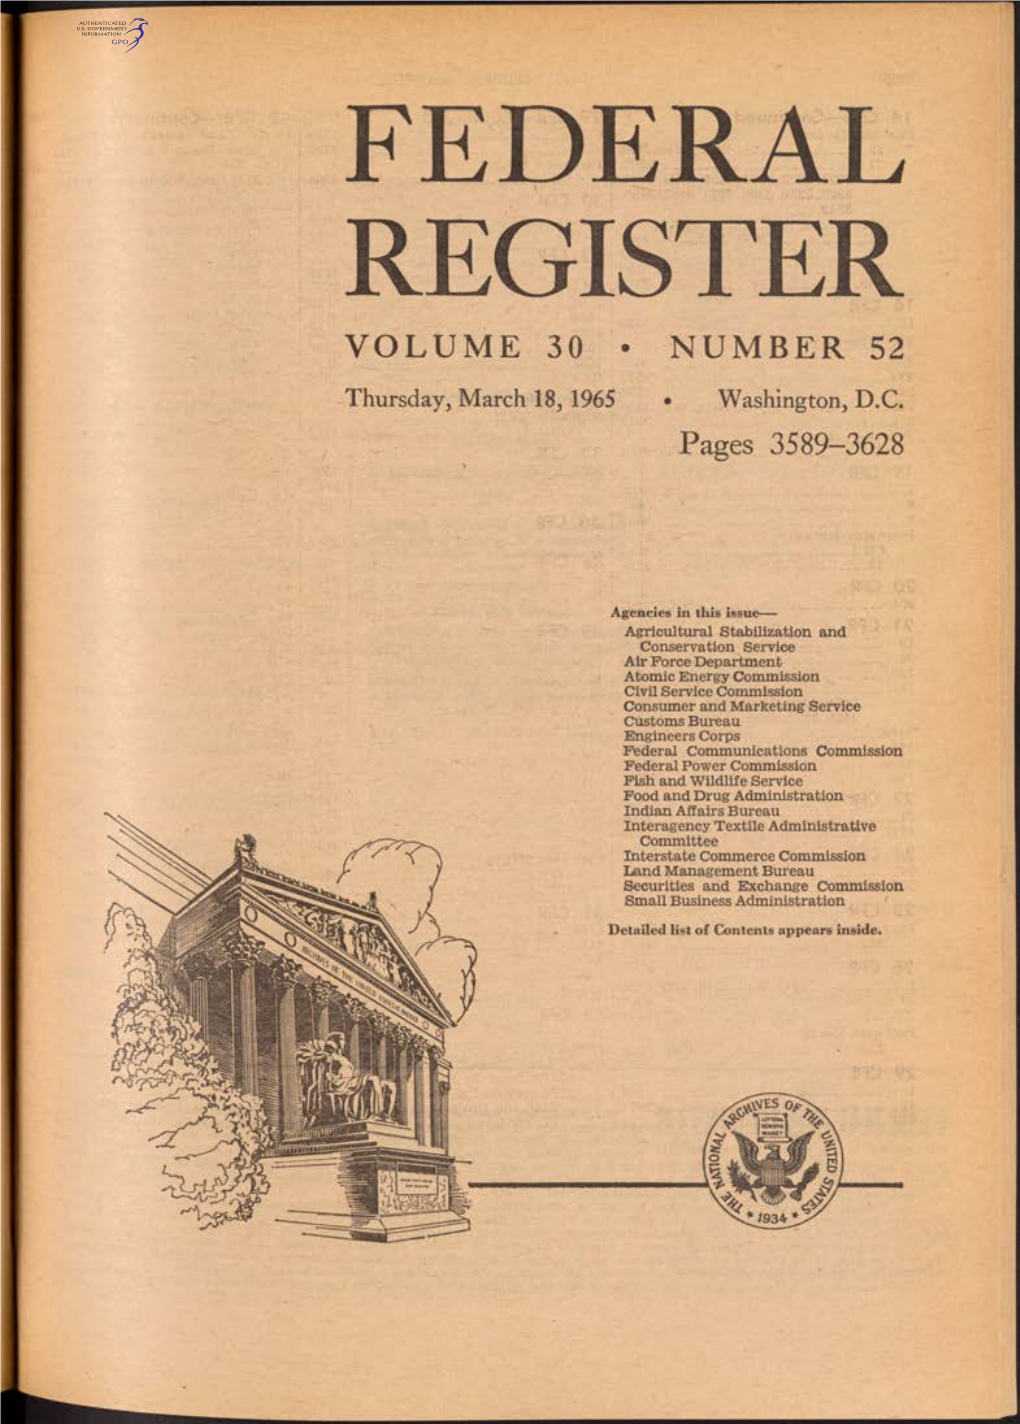 Federal Register Volume 30 • Number 52